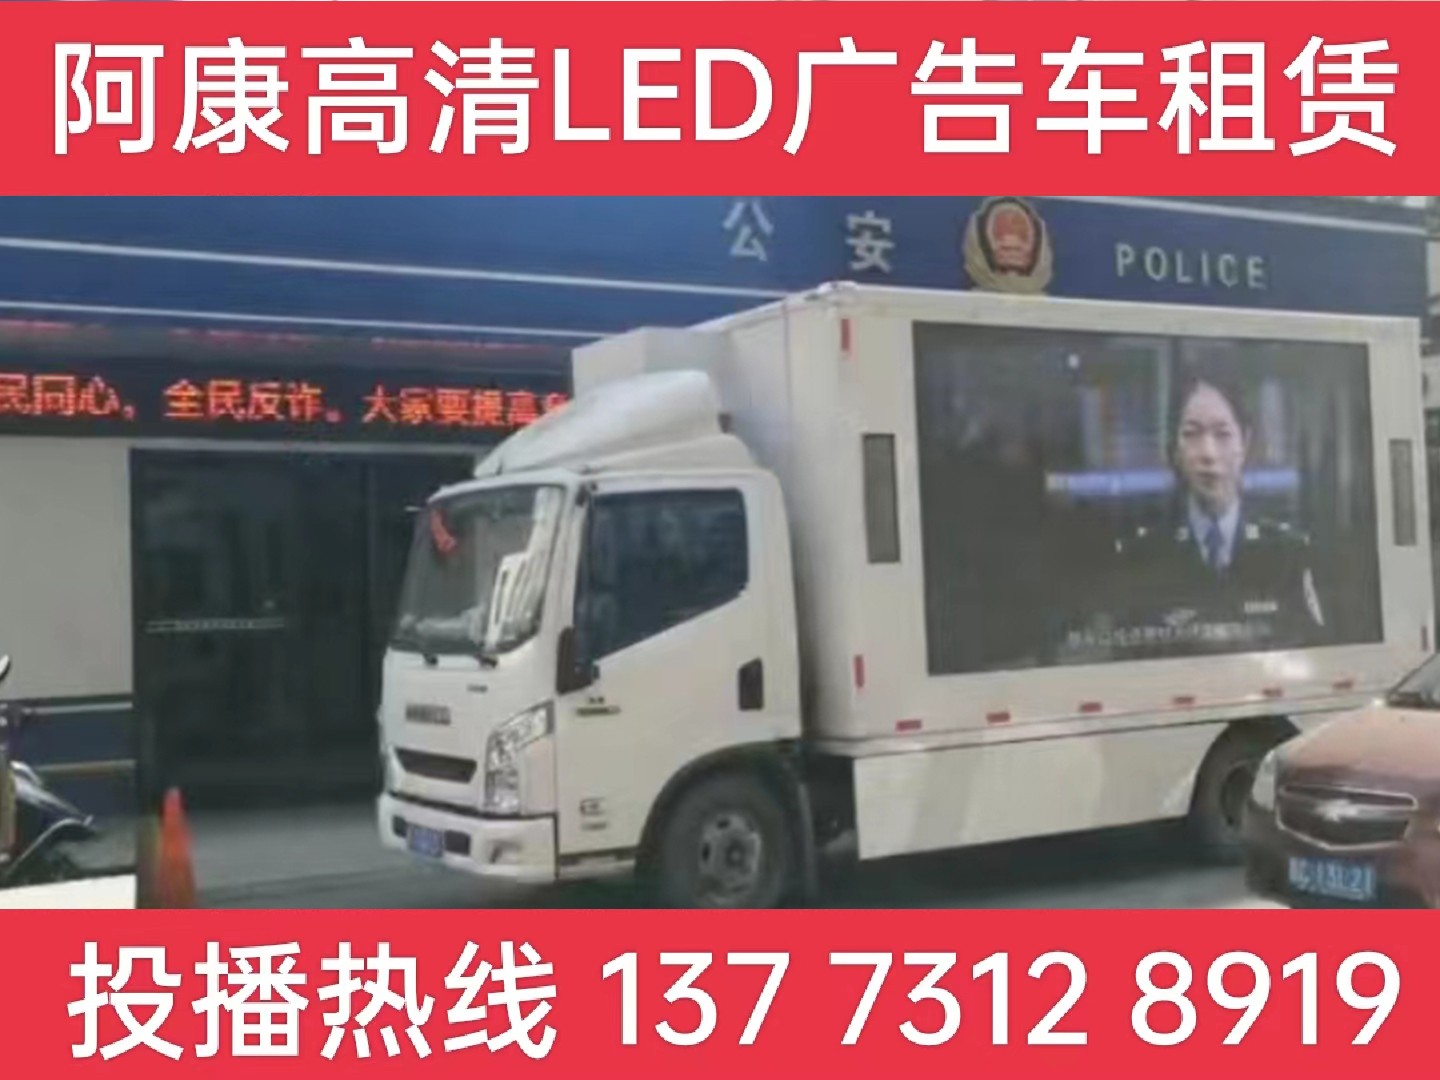 太仓LED广告车租赁-反诈宣传